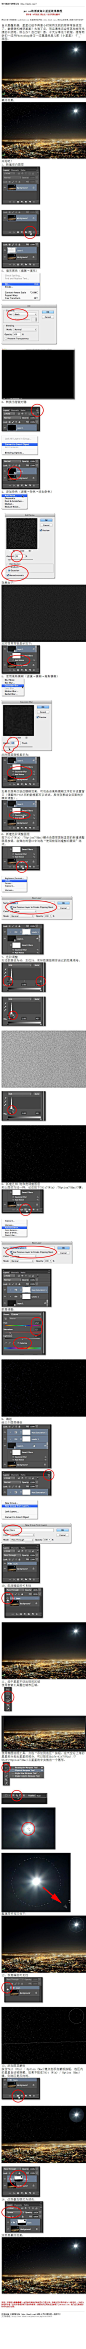 #效果教程#《photoshop cc给黑夜加上星星效果教程》 今天分享这个教程，推荐同学们一边开Photoshop学习一边重温经典儿歌《小星星》 教程网址：http://bbs.16xx8.com/thread-166334-1-1.html